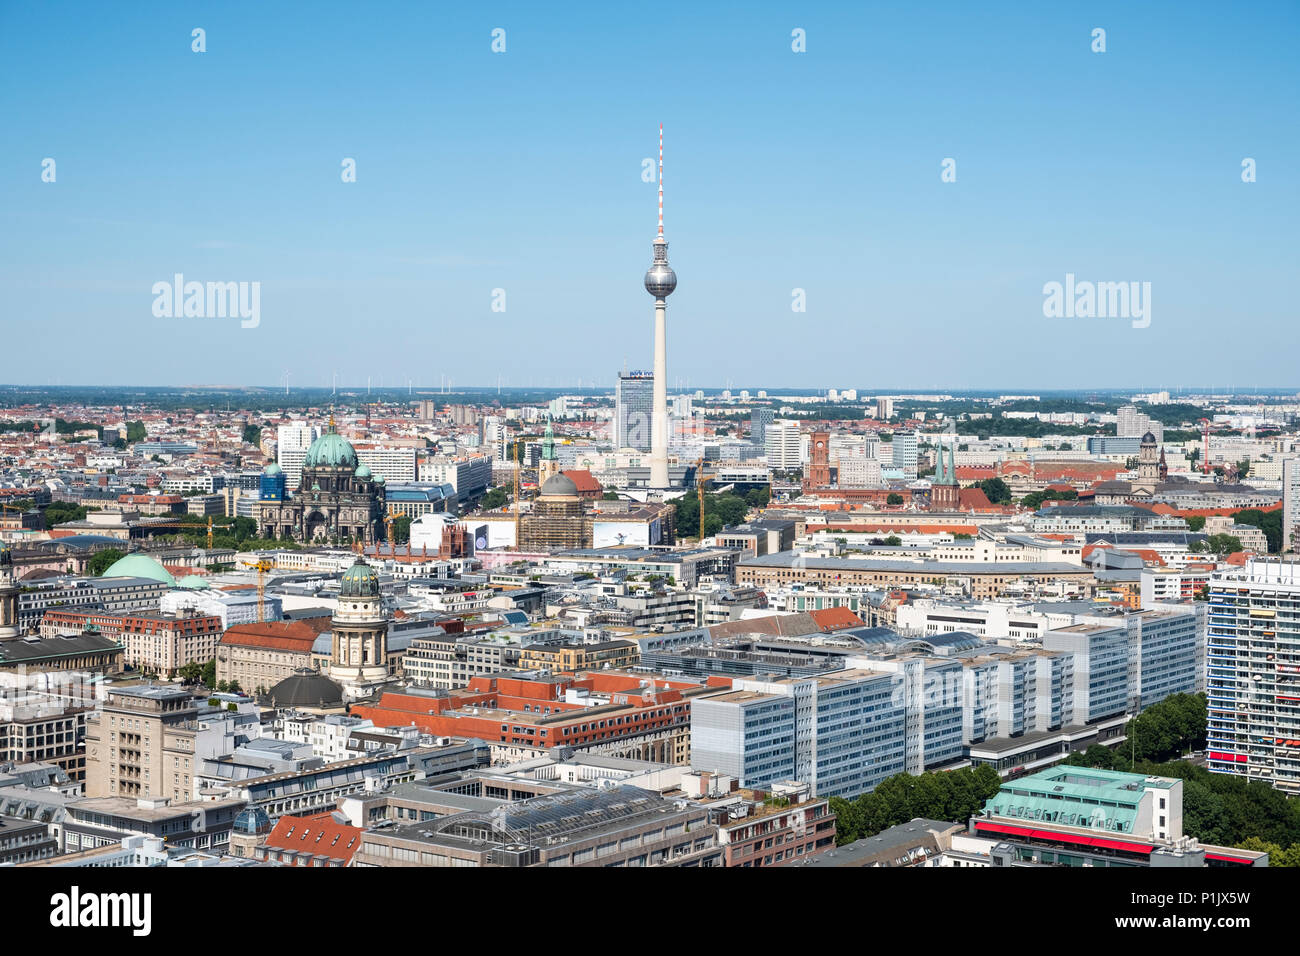 Toits de Berlin à l'égard de la tour de télévision Fernsehturm, Mitte, Berlin, Allemagne Banque D'Images